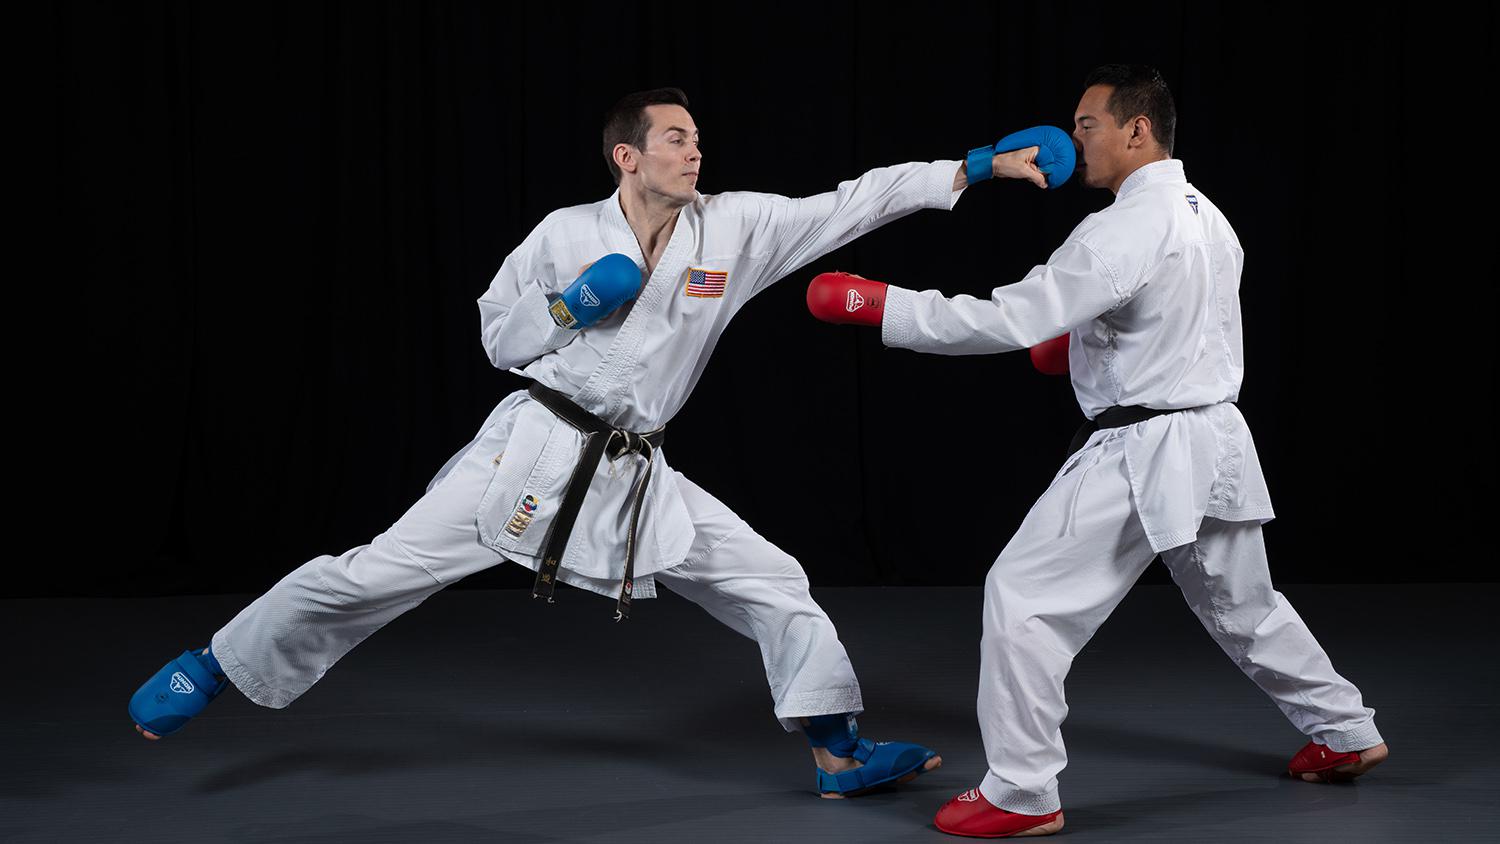 kyokushin karate sparring